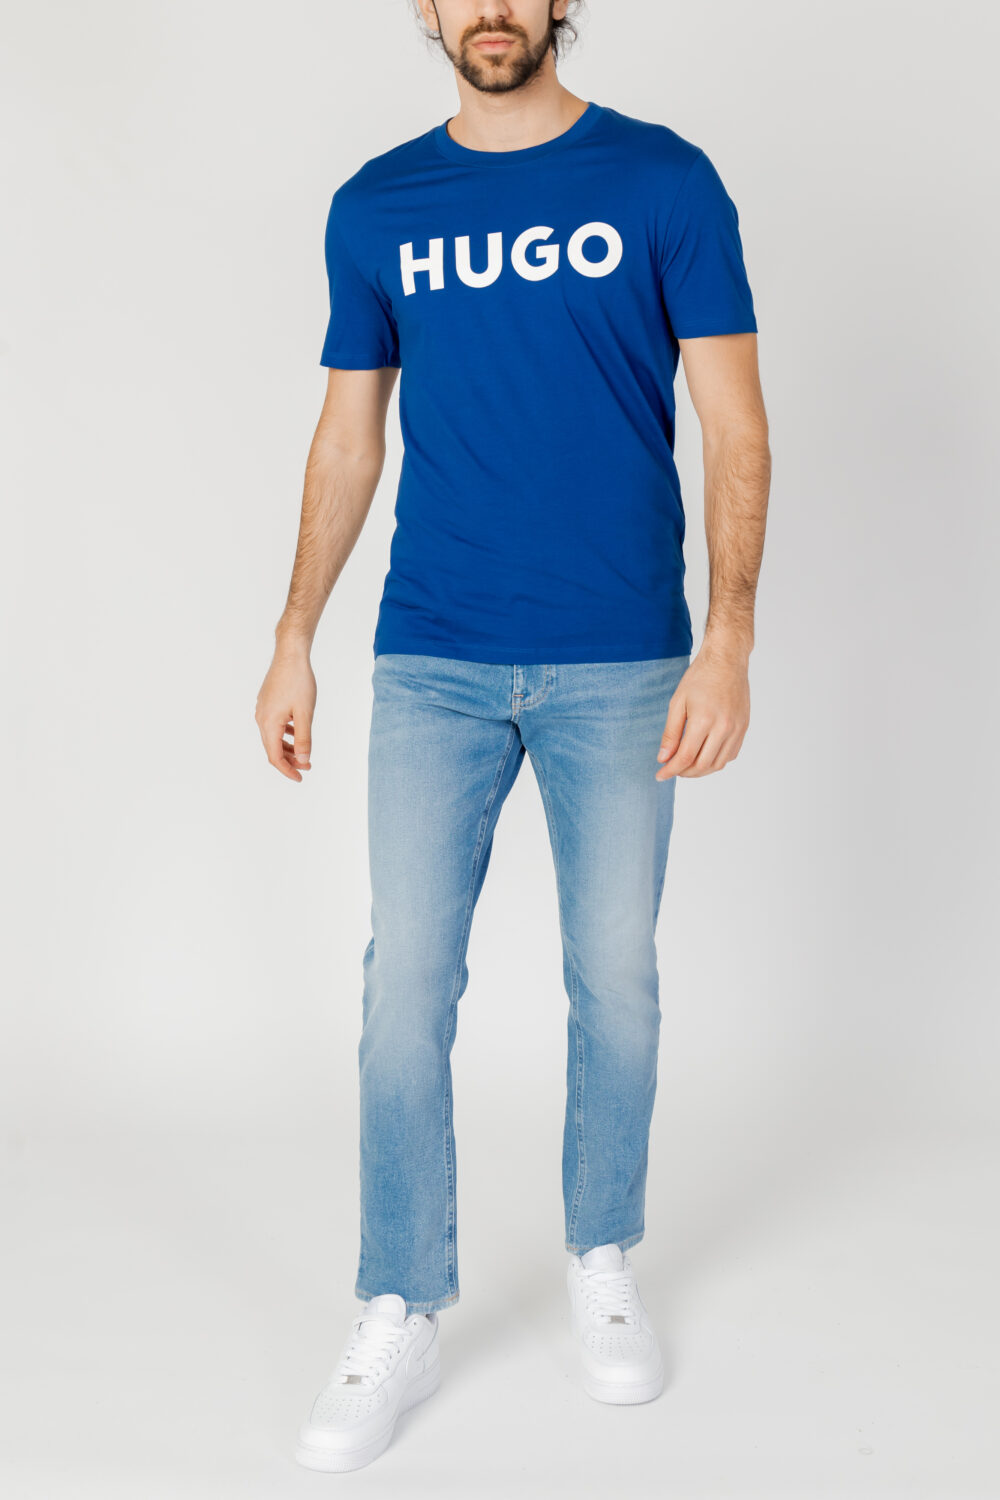 T-shirt Hugo Dulivio 10229761 01 Blu - Foto 4